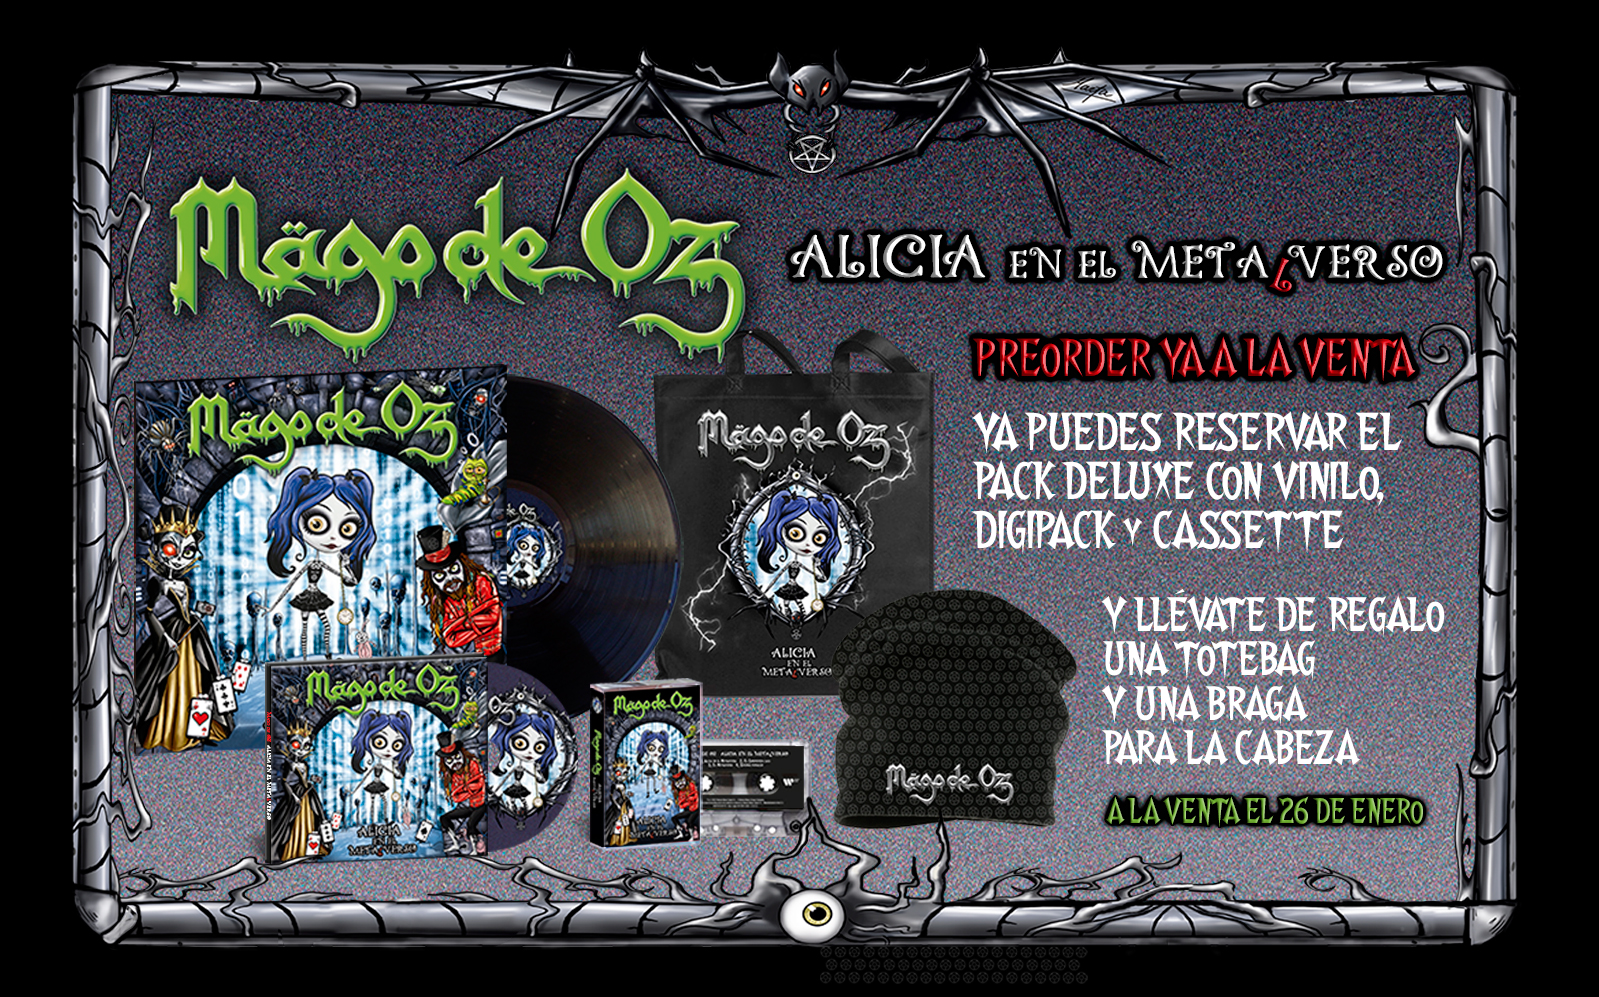 Vinilo LP Mago de Oz - Alicia en el Metalverso - Vinilo Heavy